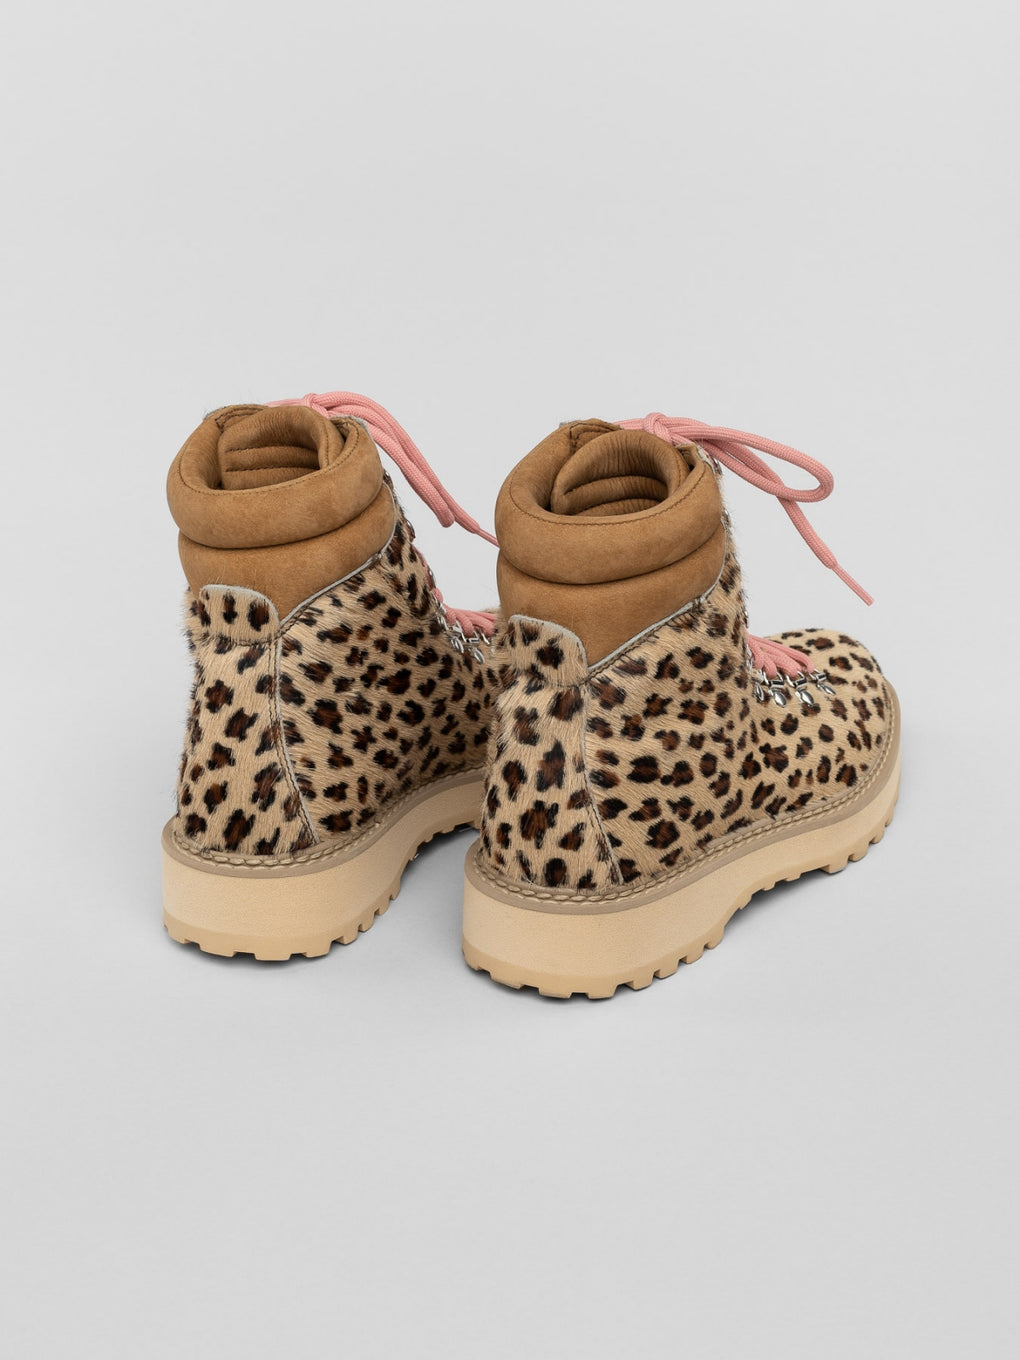 Diemme Monfumo Boots-leopard boots-Demme leopard boots-Demme winter boots-Idun-St. Paul